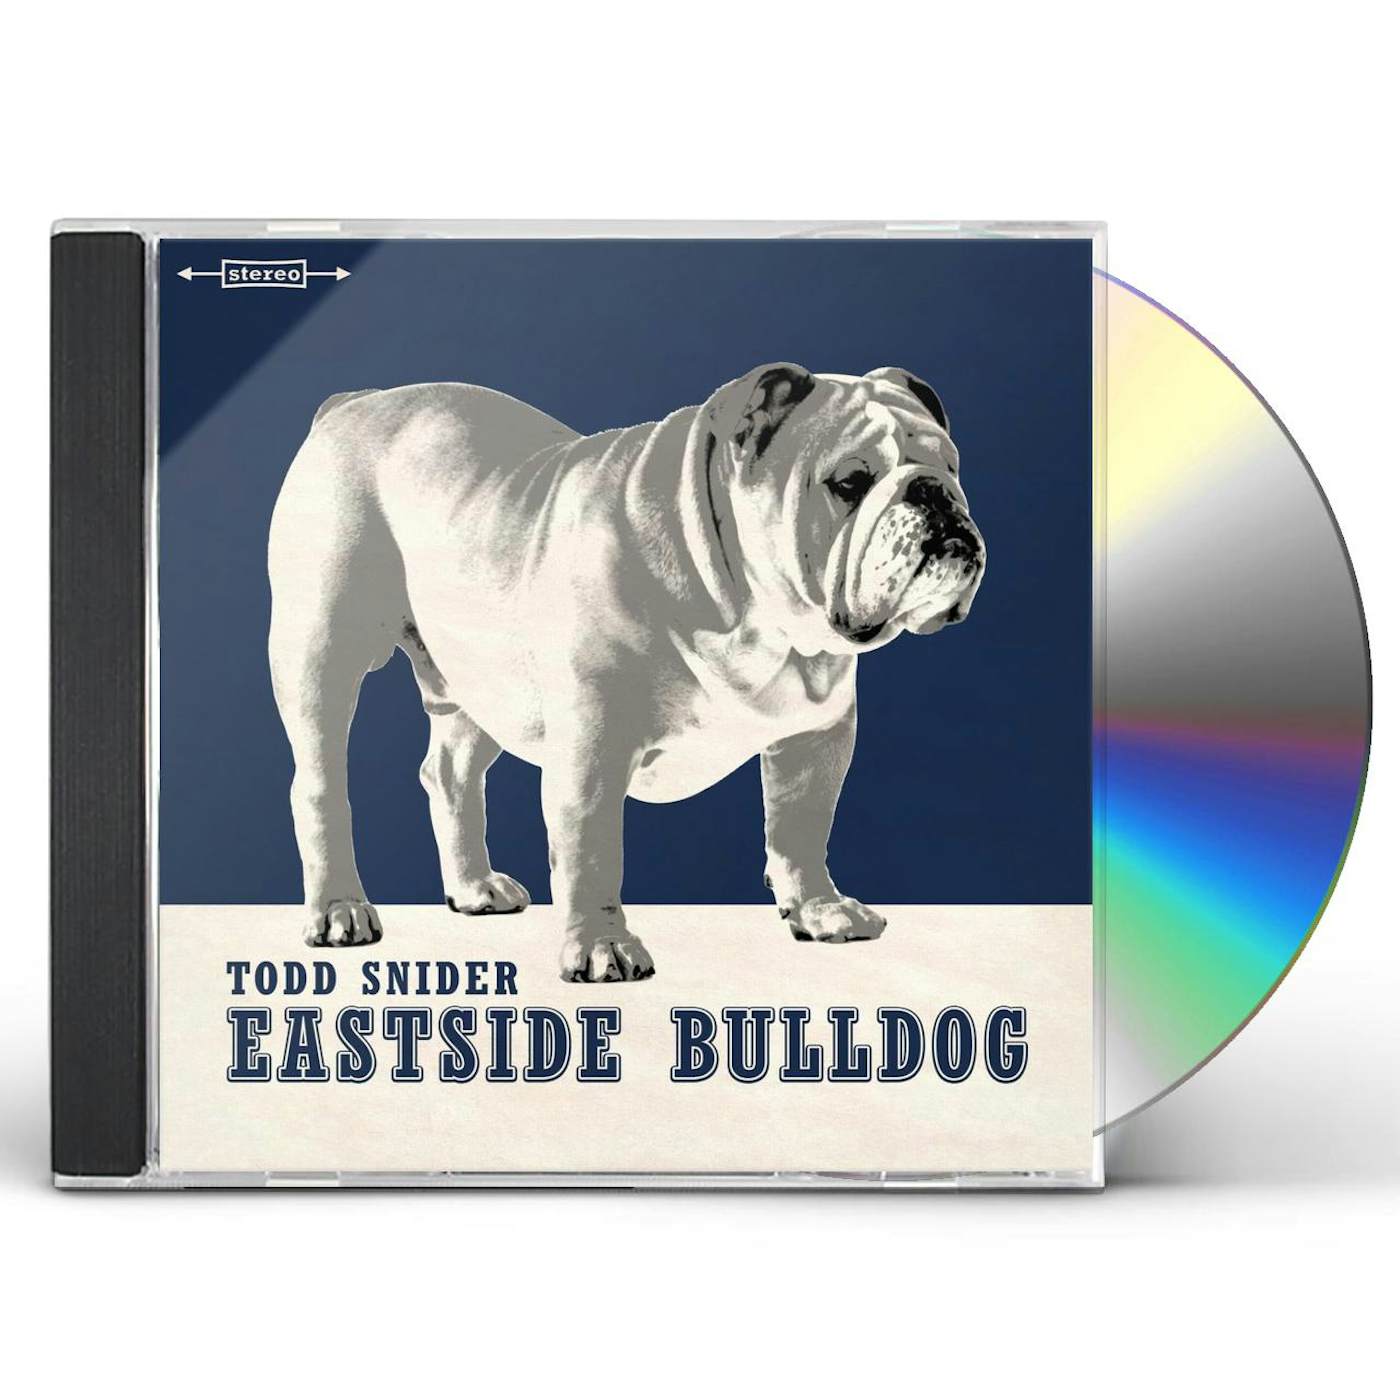 Todd Snider EASTSIDE BULLDOG CD